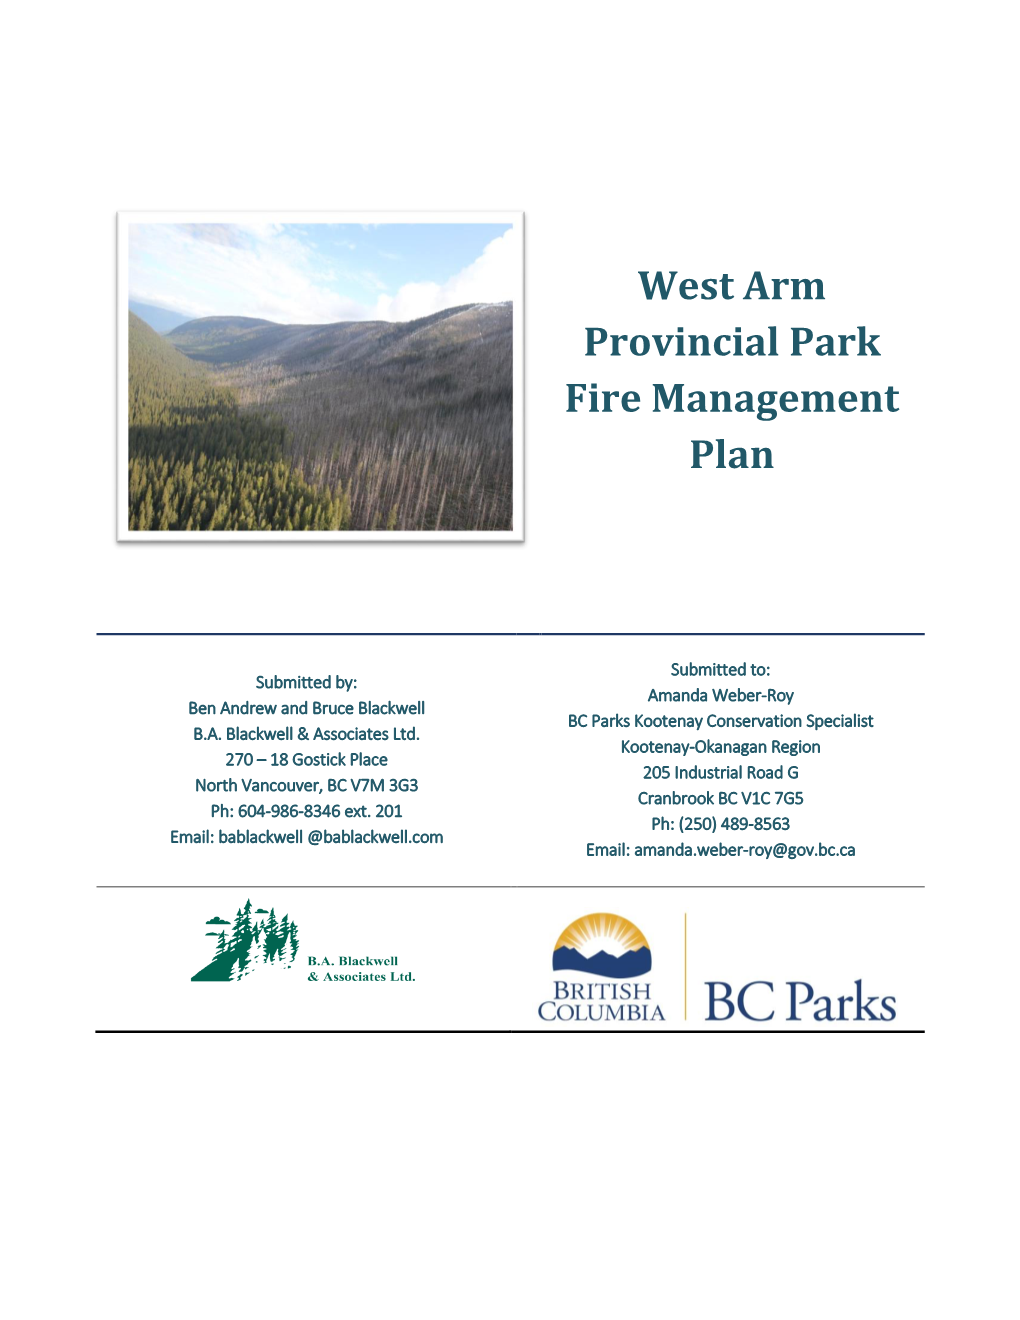 West Arm Provincial Park Fire Management Plan